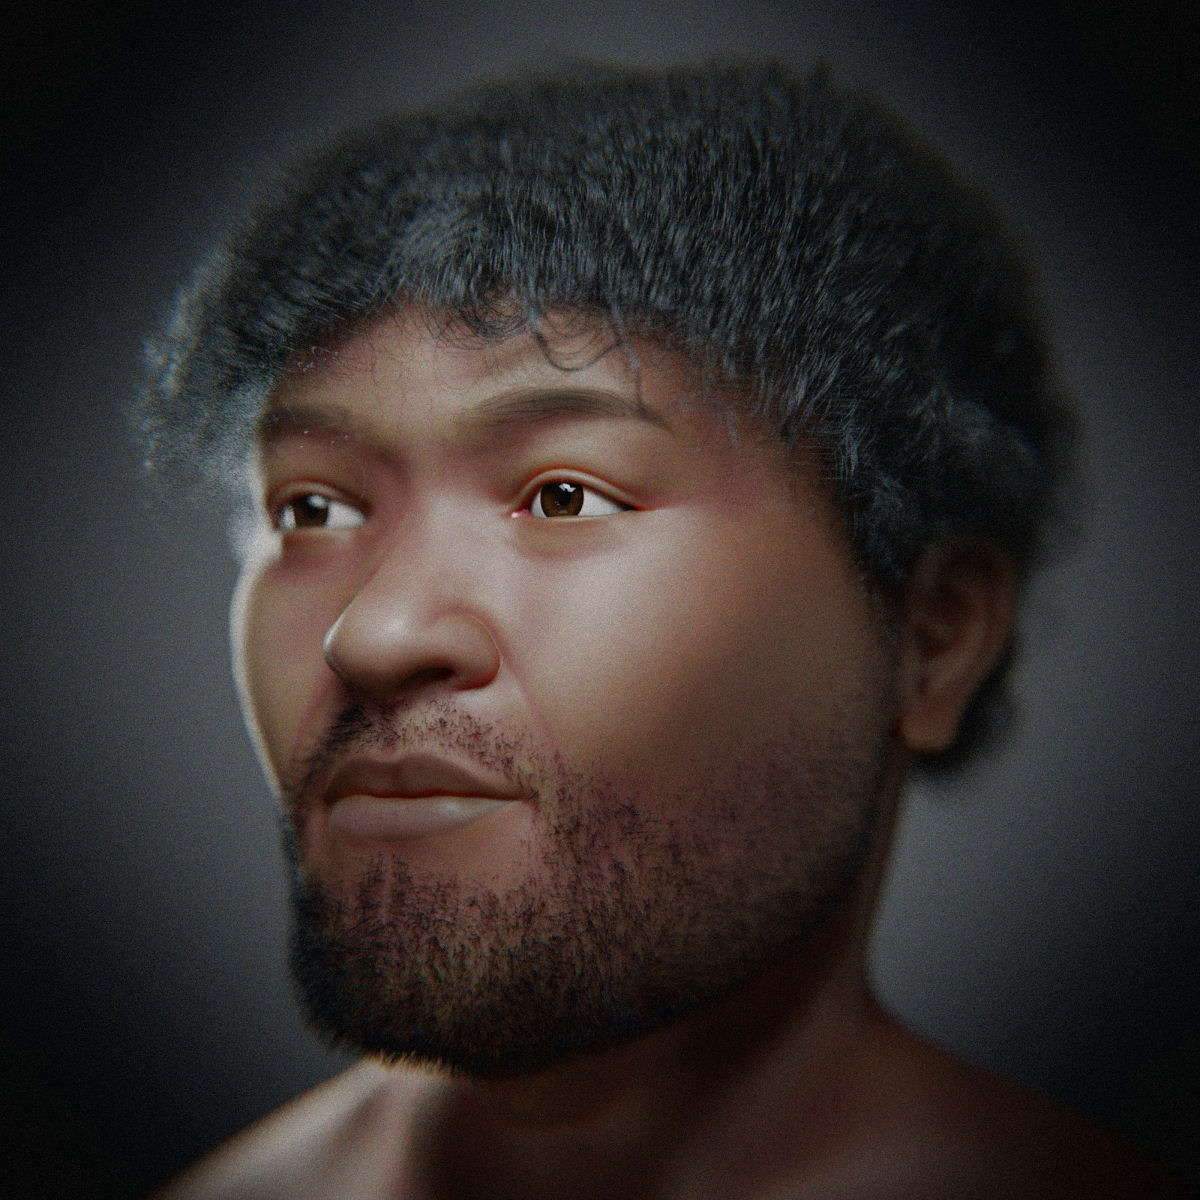 Veja o rosto reconstrudo de um homem egpcio de 30.000 anos